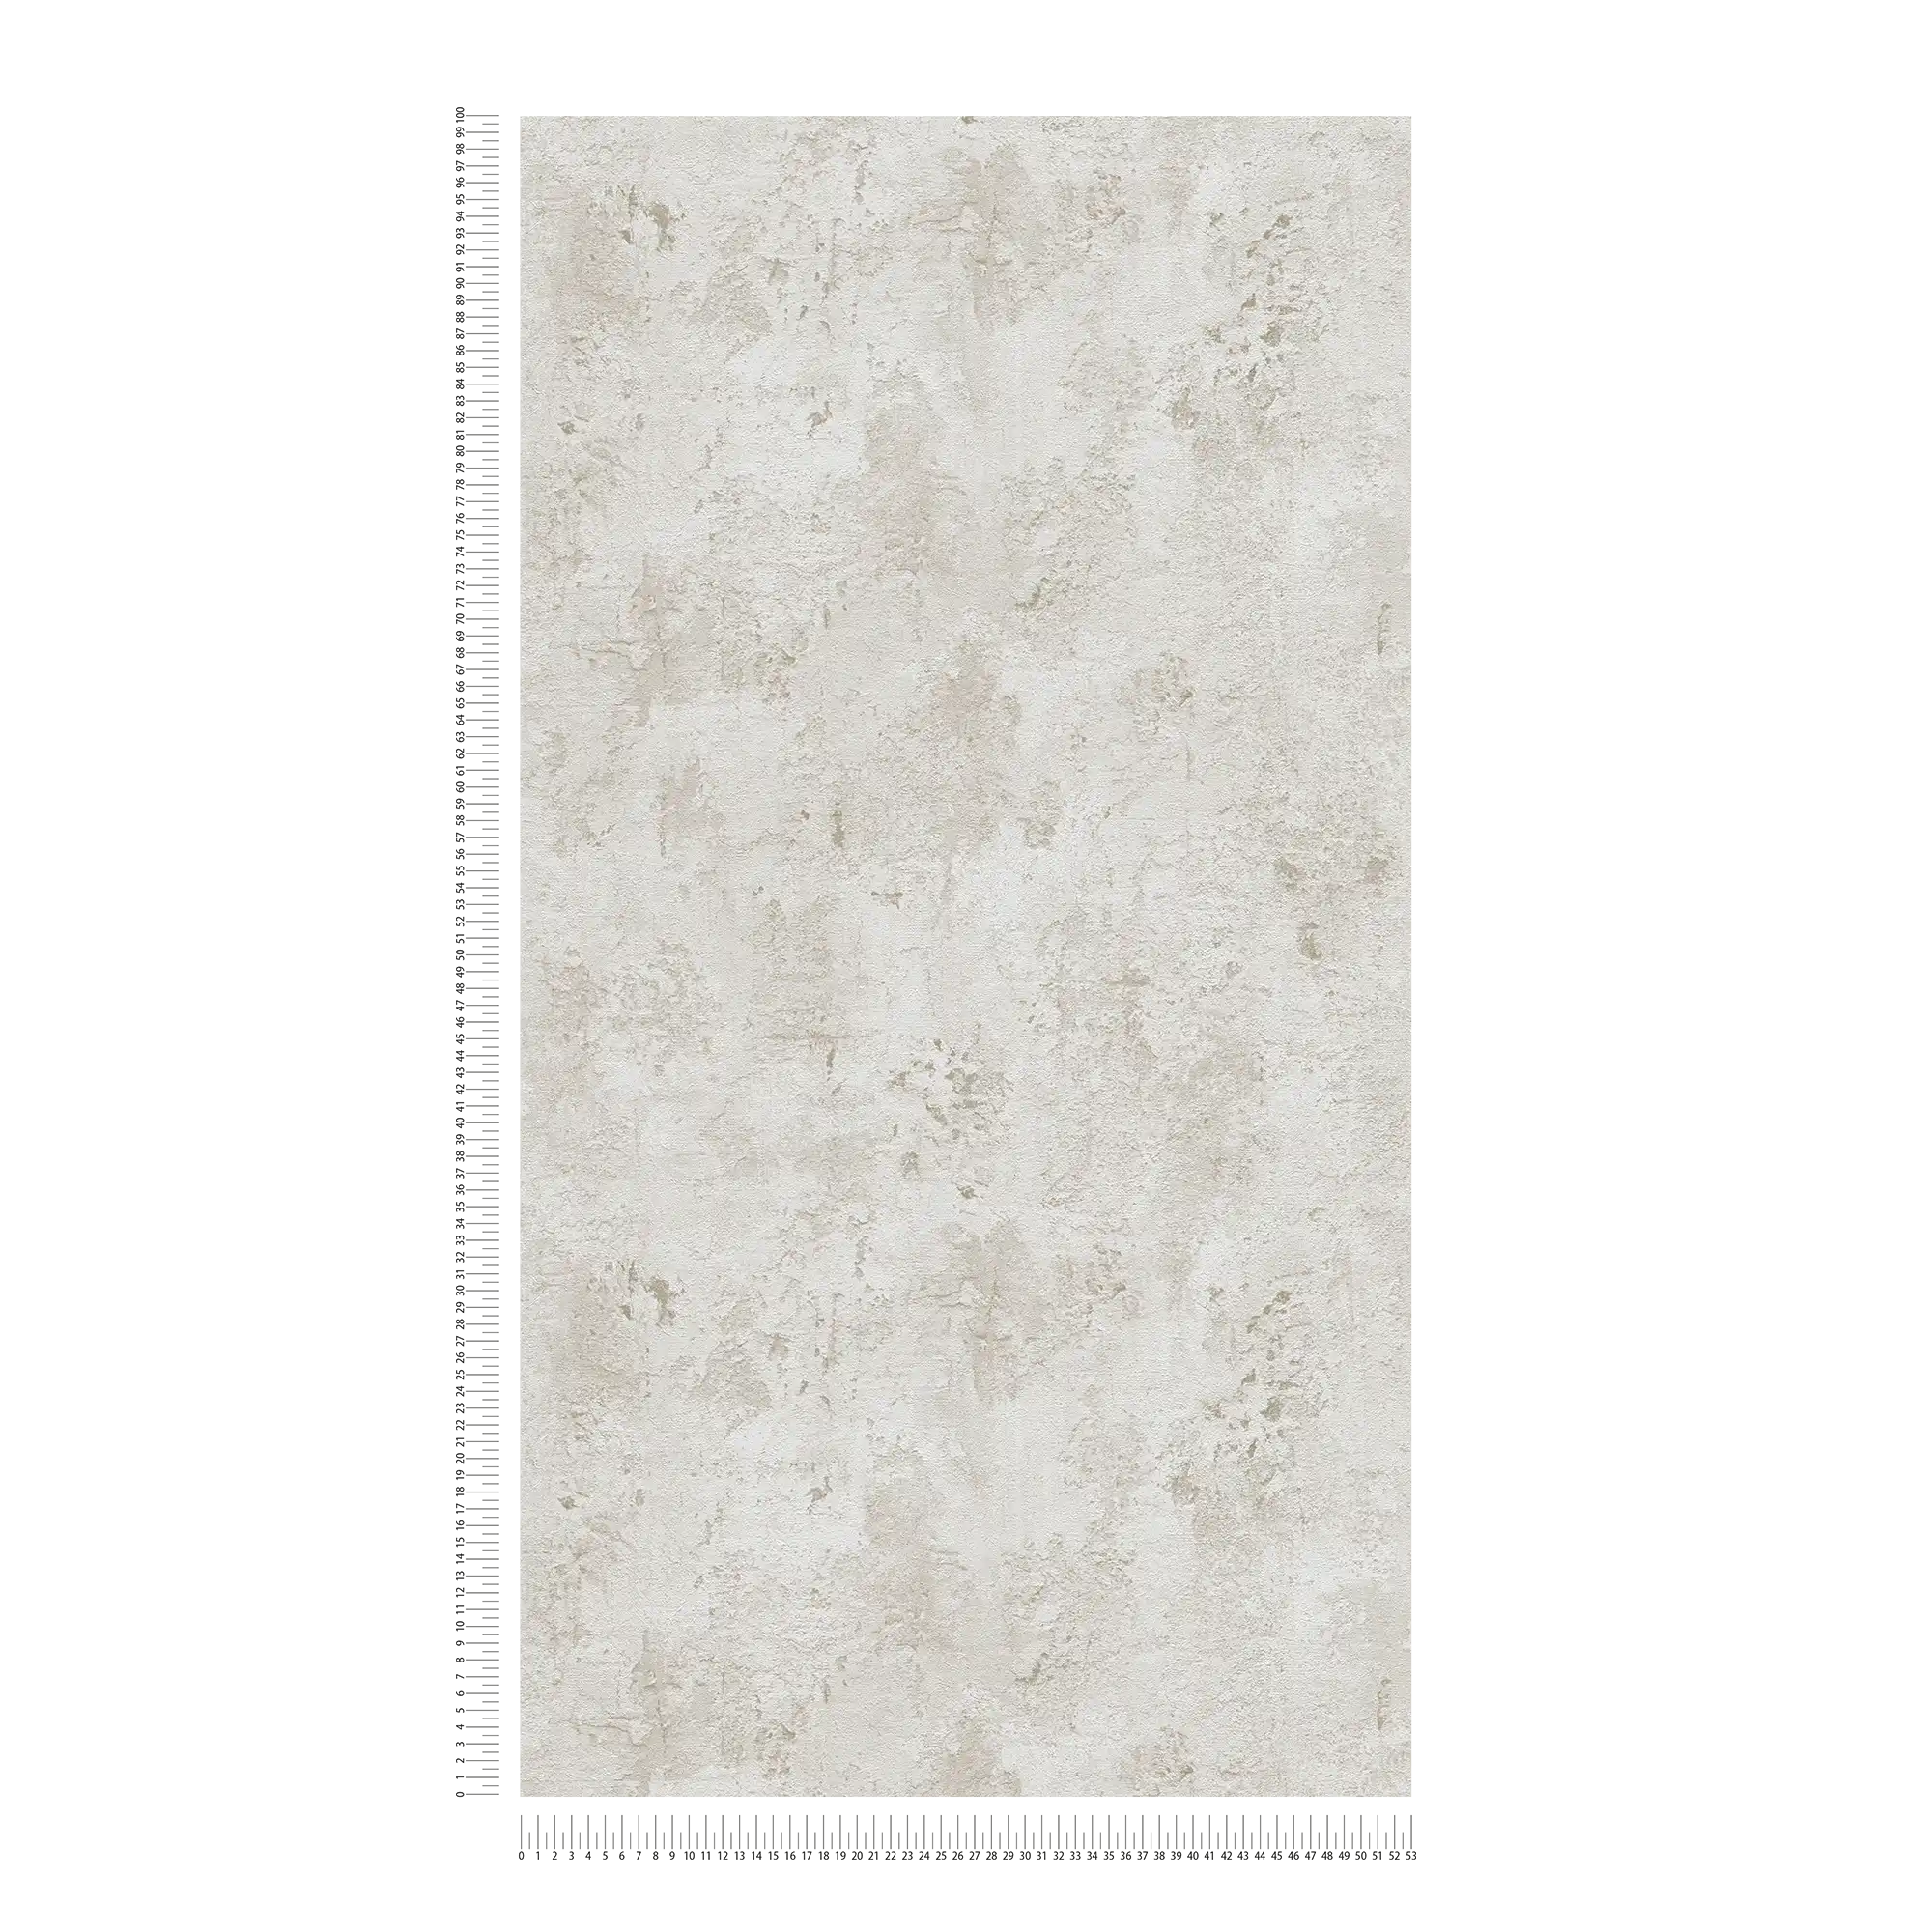             Papier peint imitation plâtre avec motifs structurés - gris, beige
        